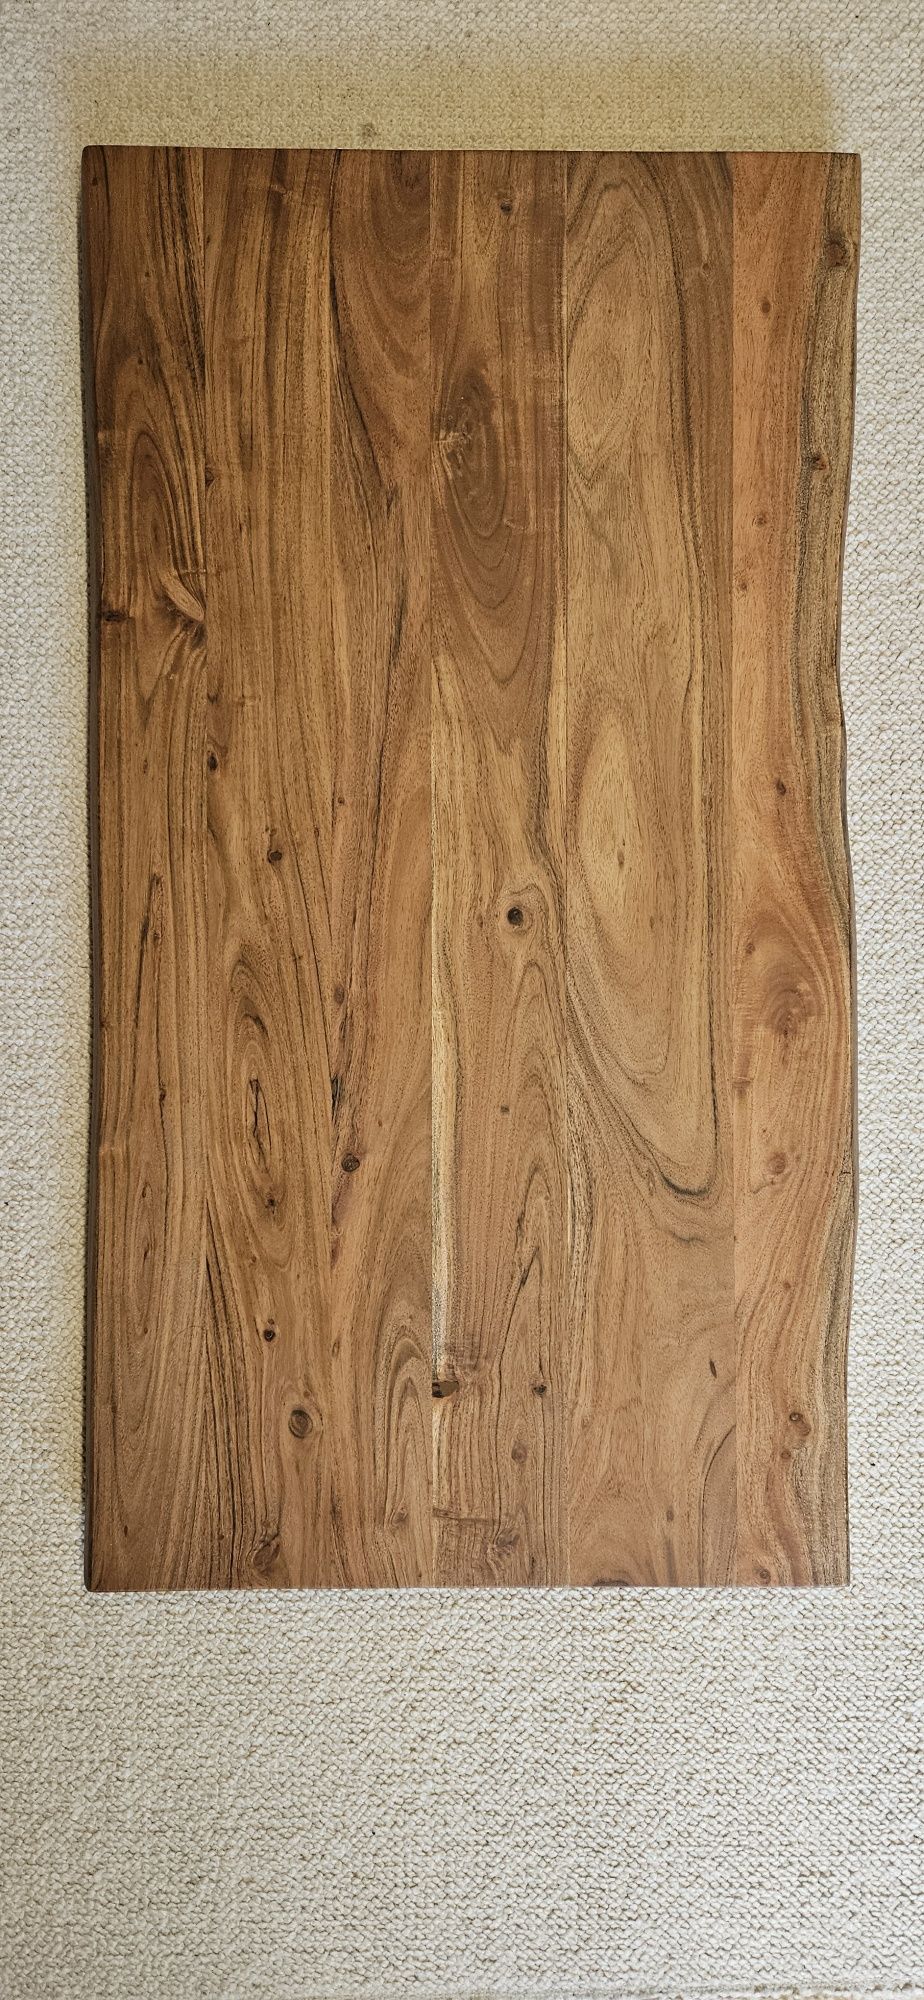 NOWY Stolik kawowy HOVSLUND drewniany 60 x 110 cm